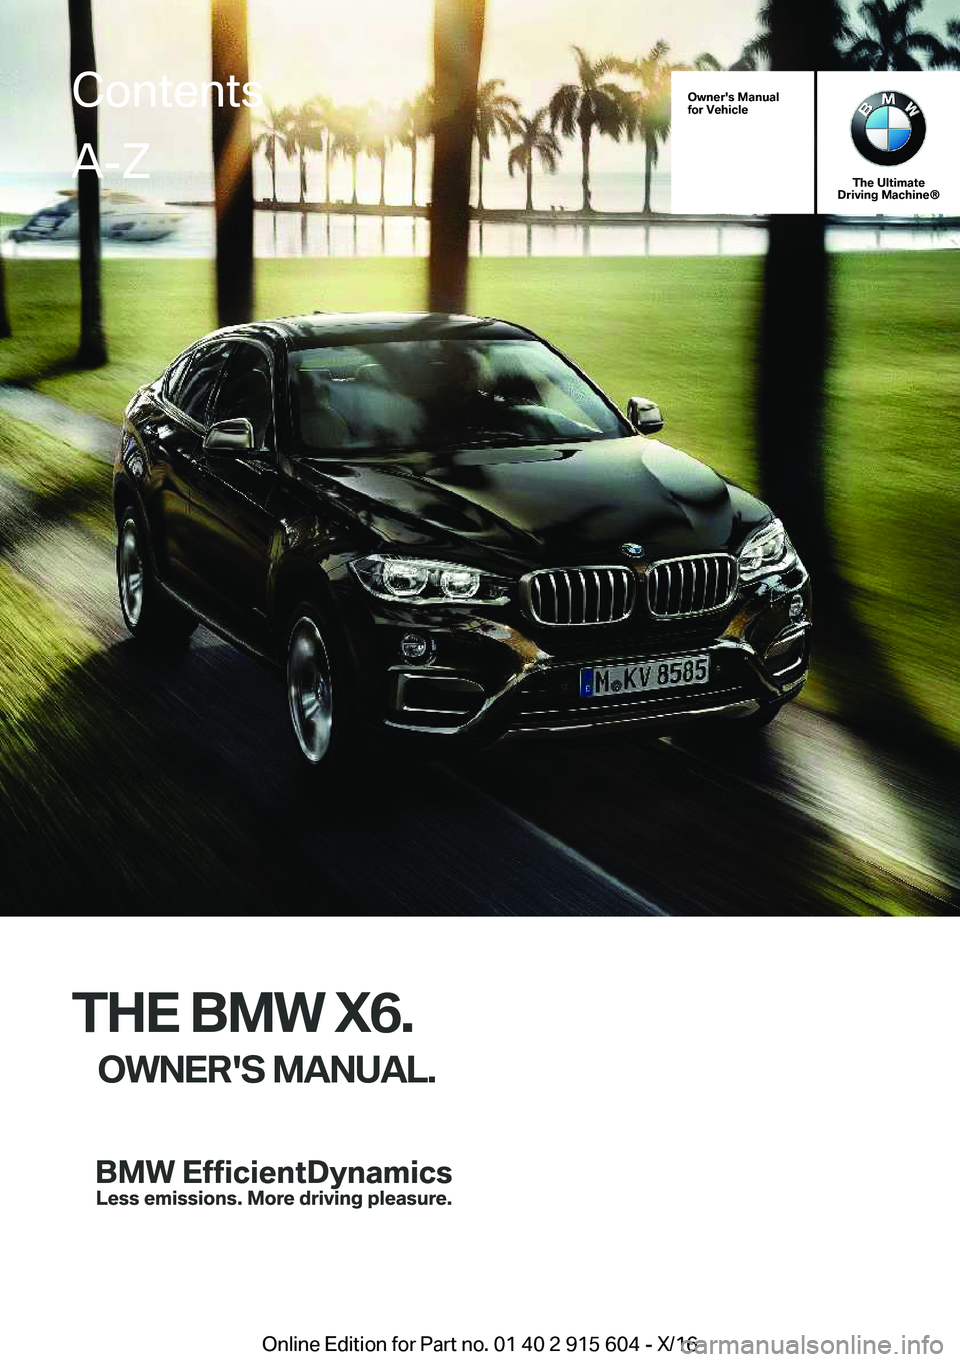 BMW X6 2017  Owners Manual �O�w�n�e�r�'�s��M�a�n�u�a�l
�f�o�r��V�e�h�i�c�l�e
�T�h�e��U�l�t�i�m�a�t�e
�D�r�i�v�i�n�g��M�a�c�h�i�n�e�n
�T�H�E��B�M�W��X�6�.
�O�W�N�E�R�'�S��M�A�N�U�A�L�.
�C�o�n�t�e�n�t�s�A�-�Z
�O�n�